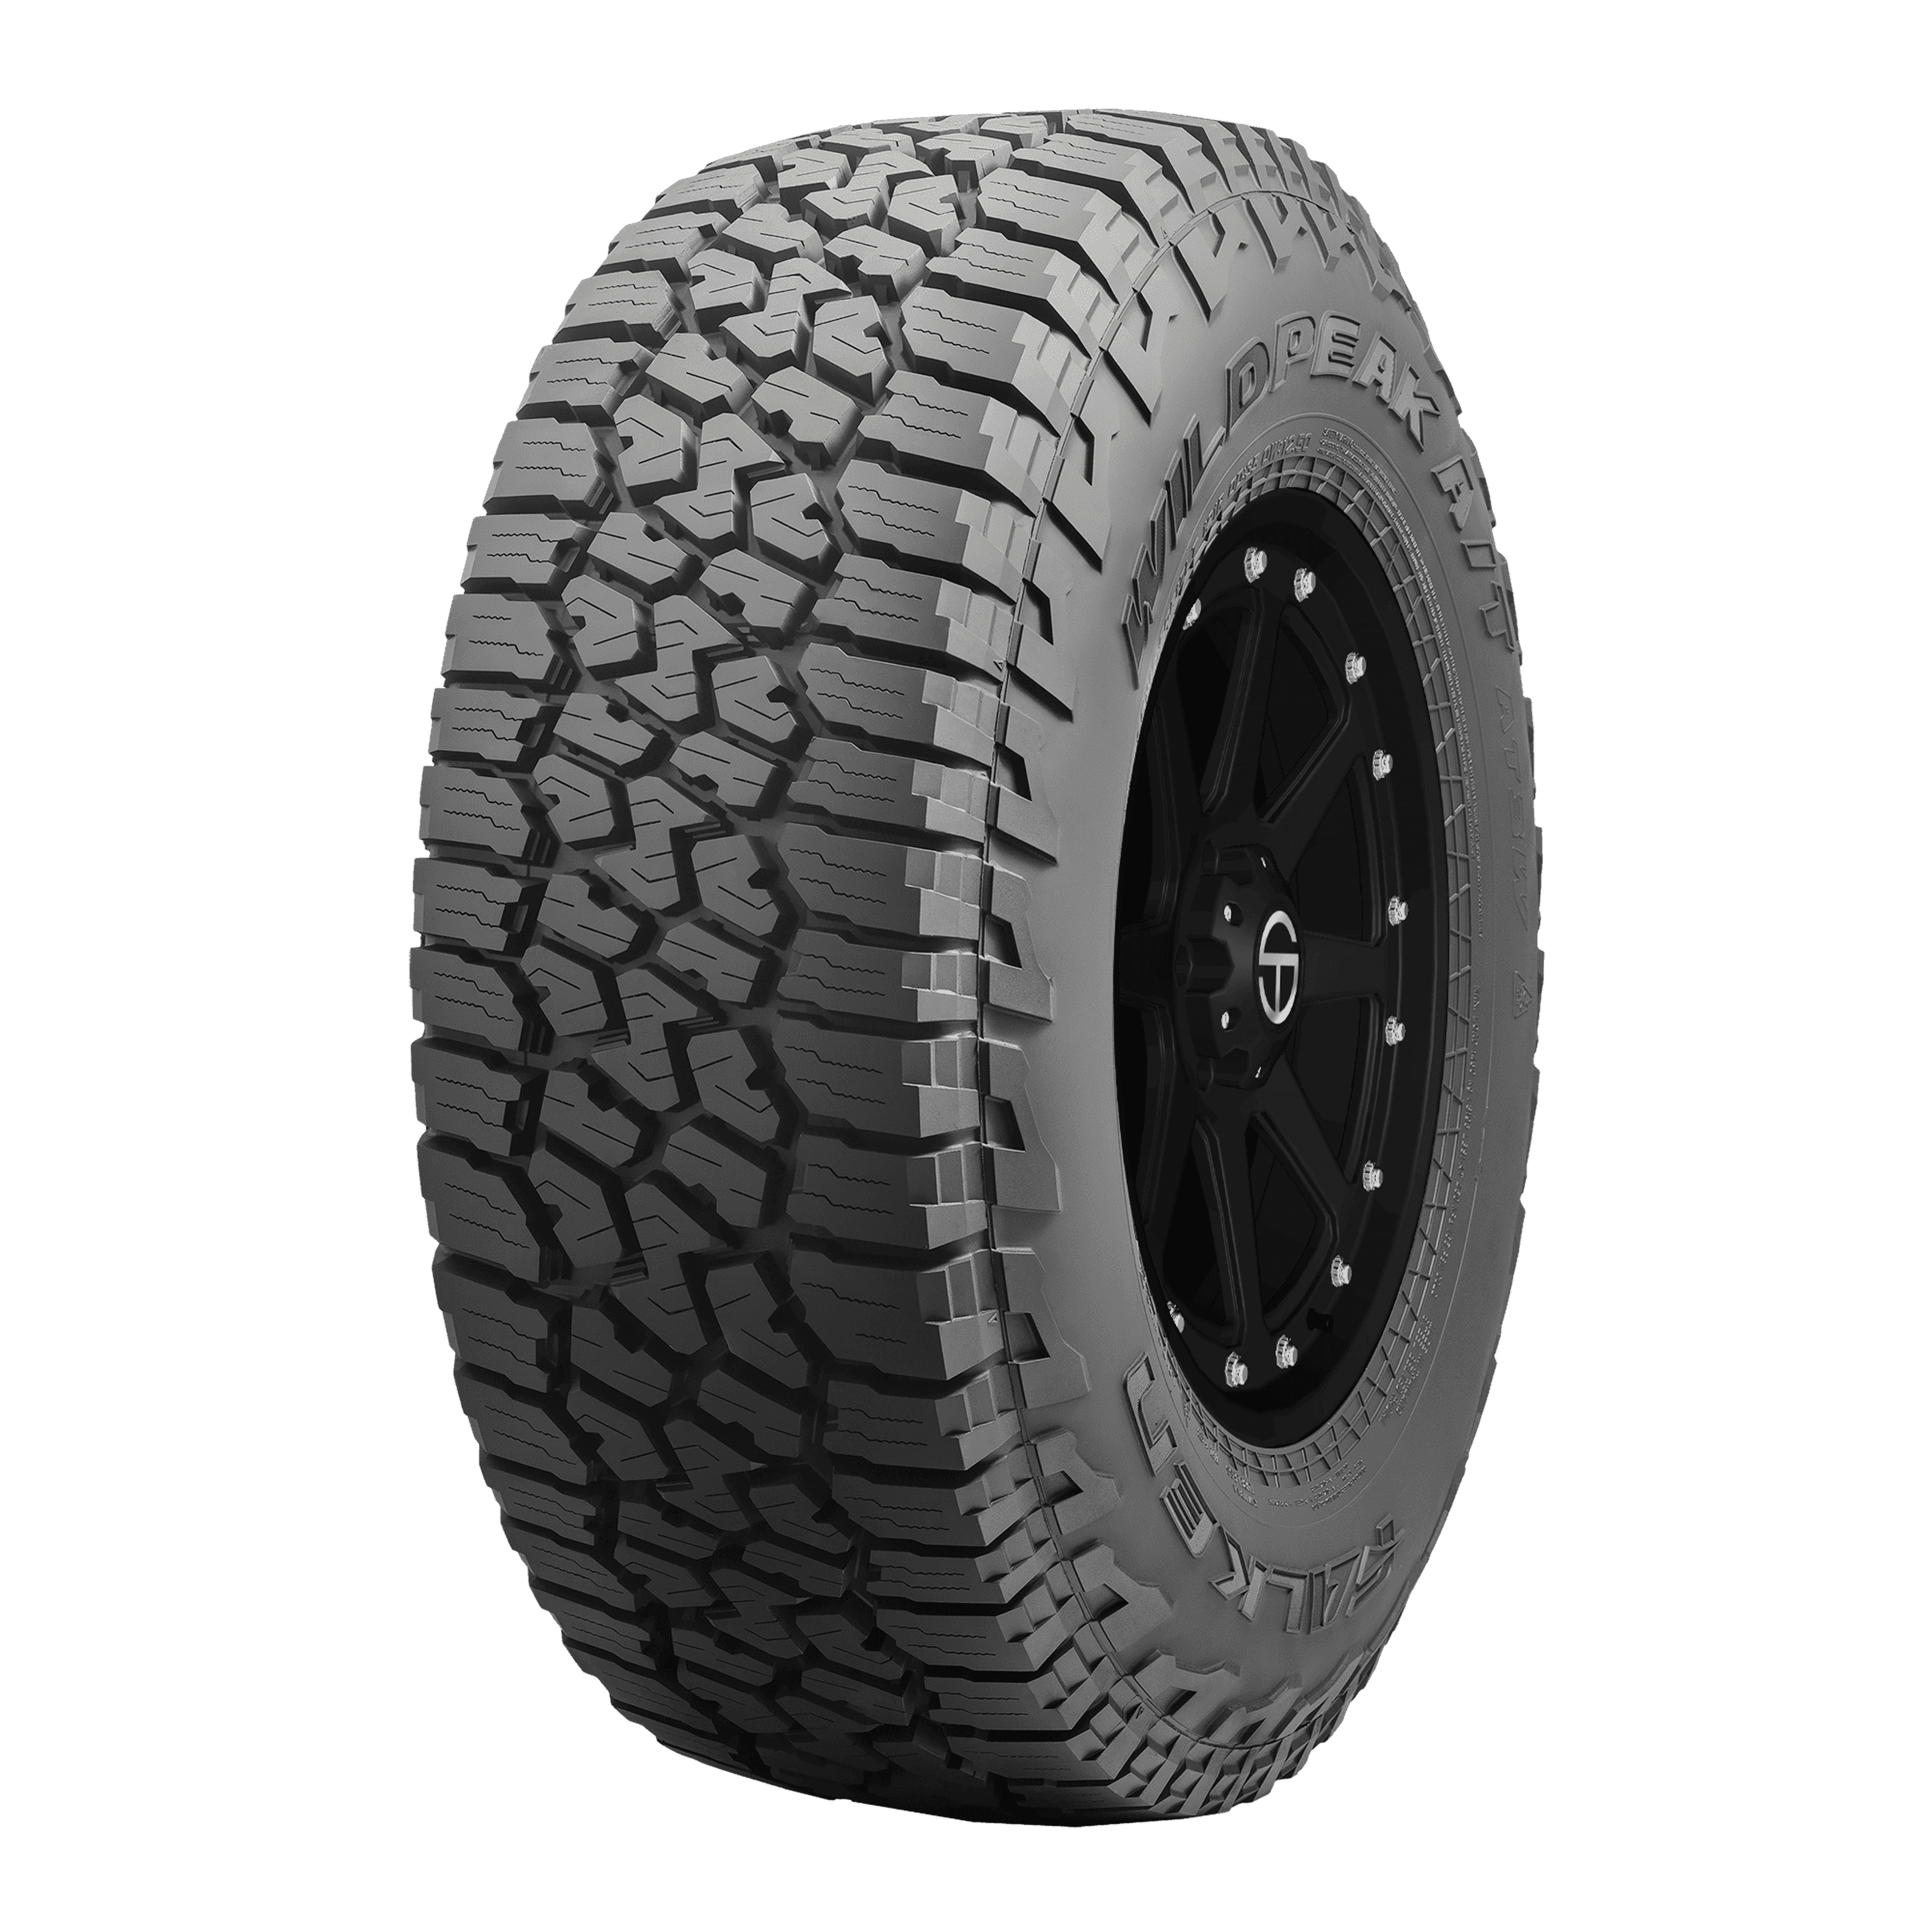 Falken Wildpeak Online A/T3W SimpleTire Buy | Tires